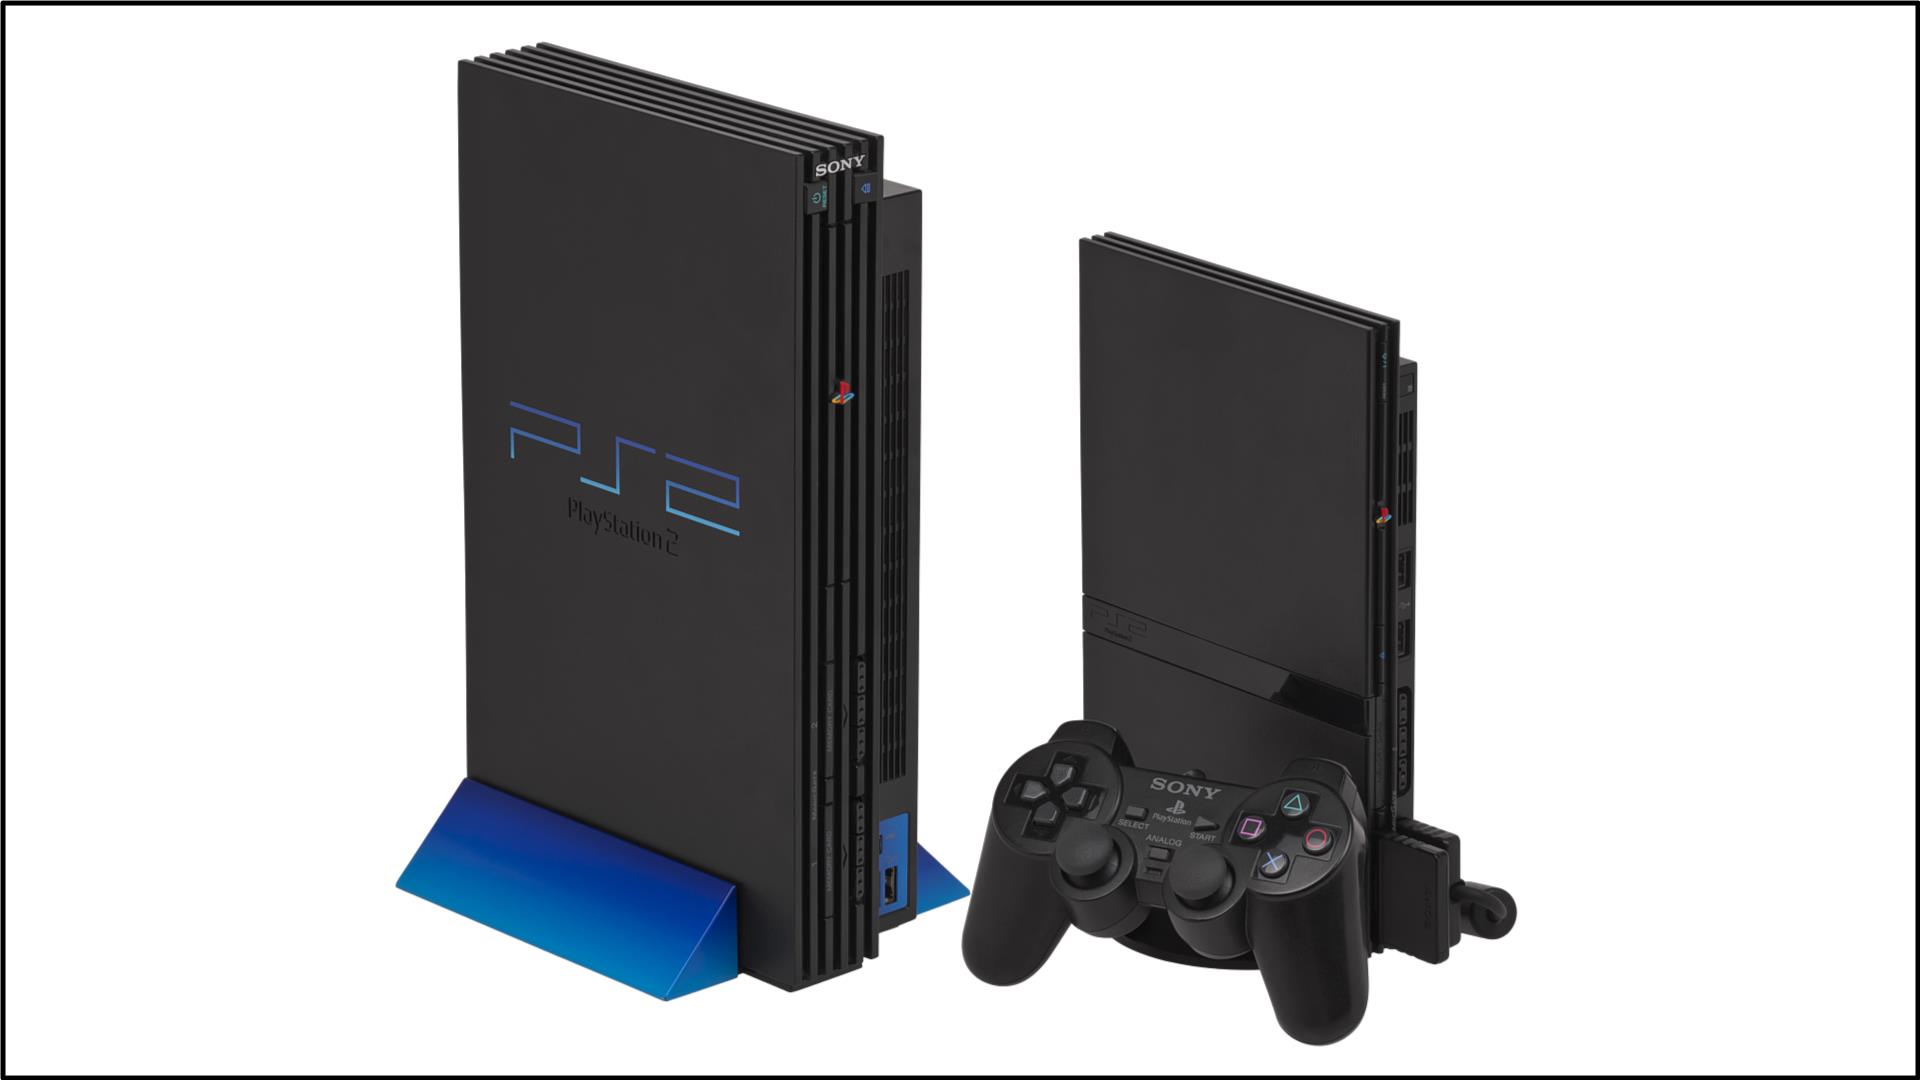 1 – PlayStation 2 PS2